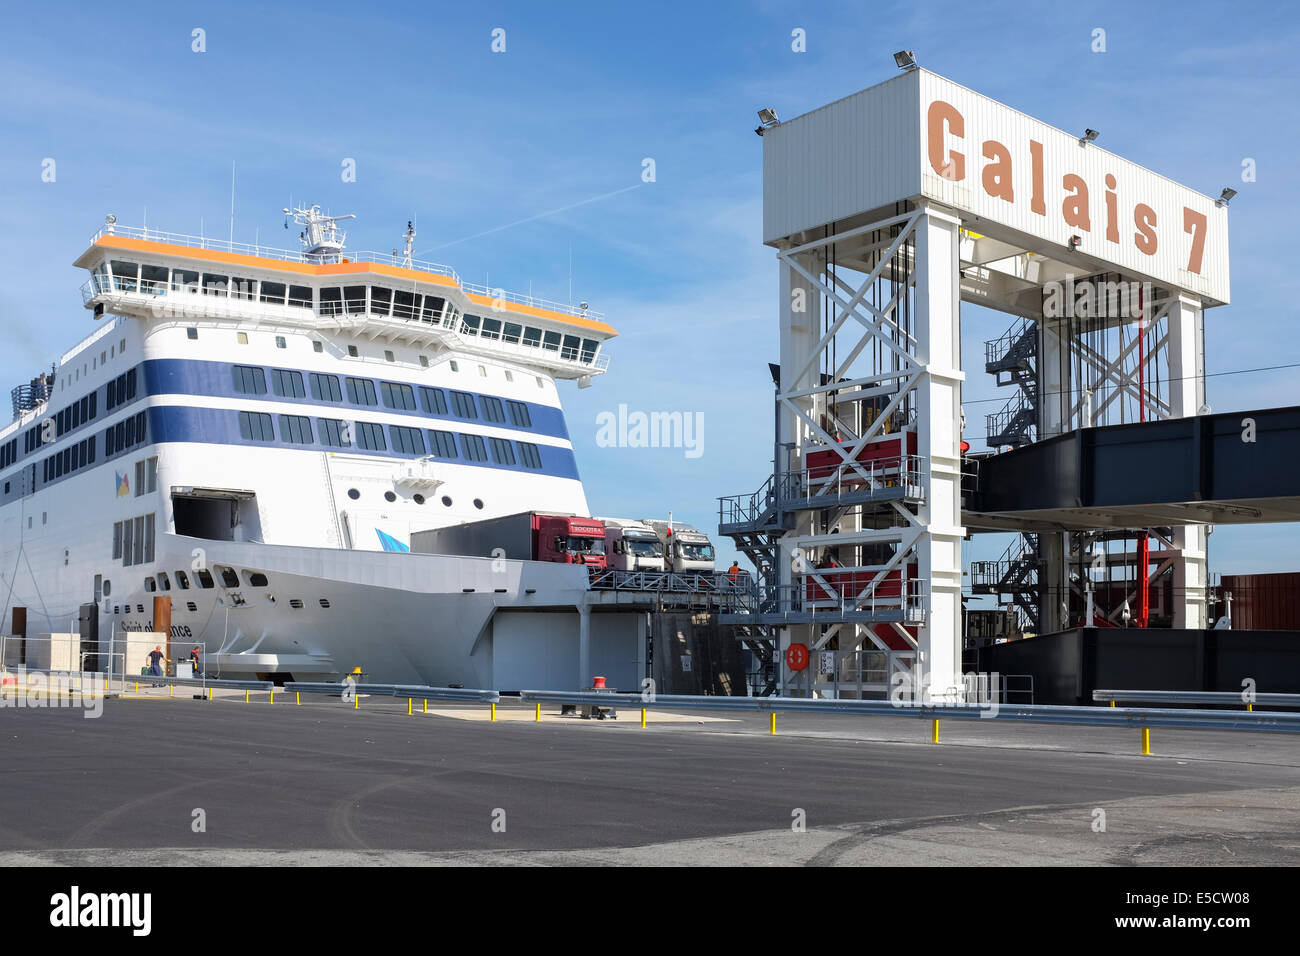 Calais port Banque de photographies et d'images à haute résolution - Alamy